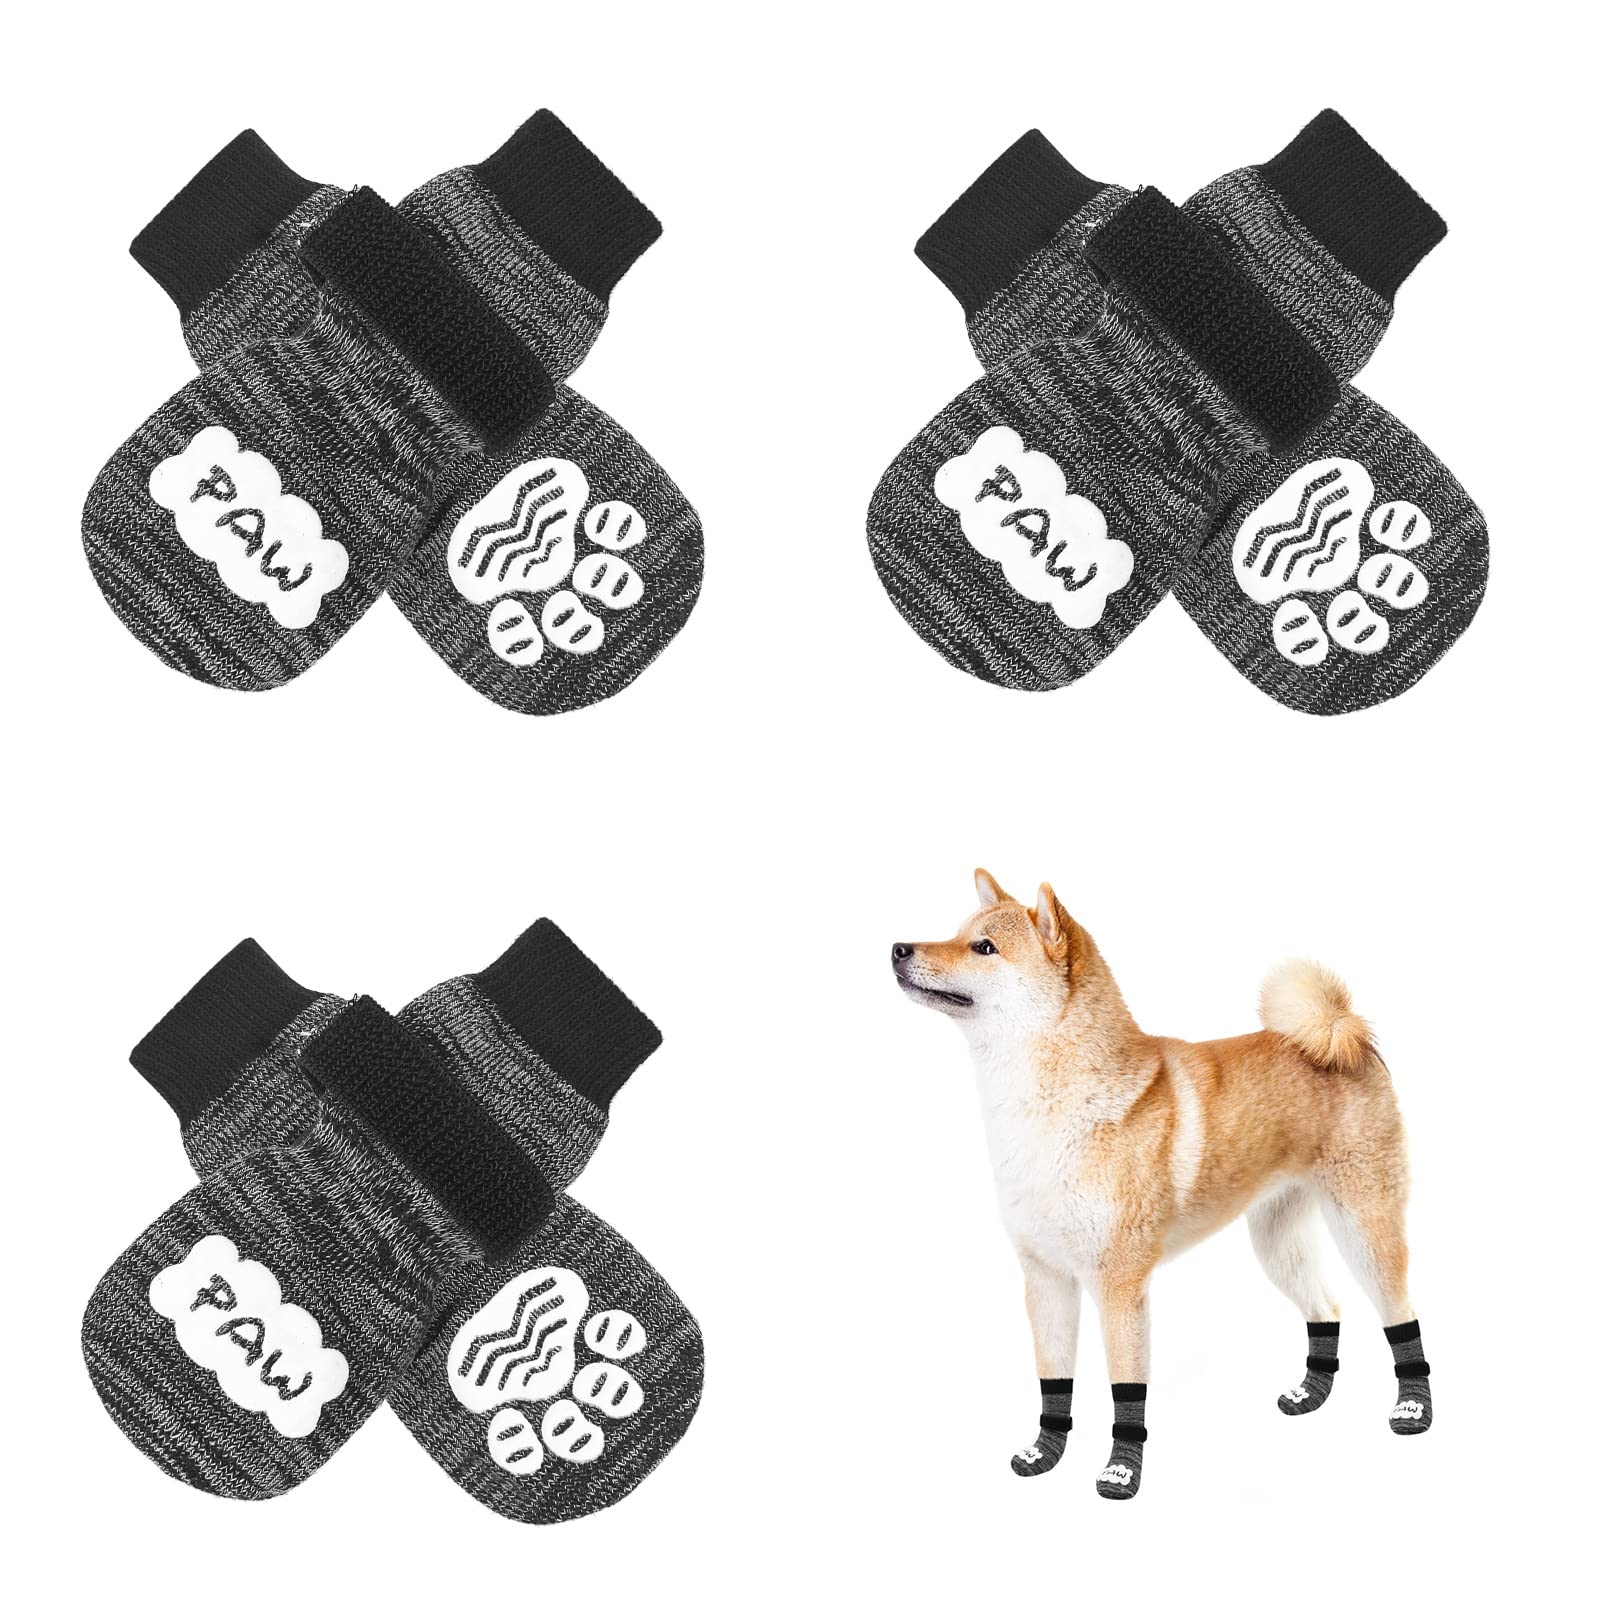 EXPAWLORER Double Side Anti-Slip Dog Socks - 3 Pairs Dog Grip